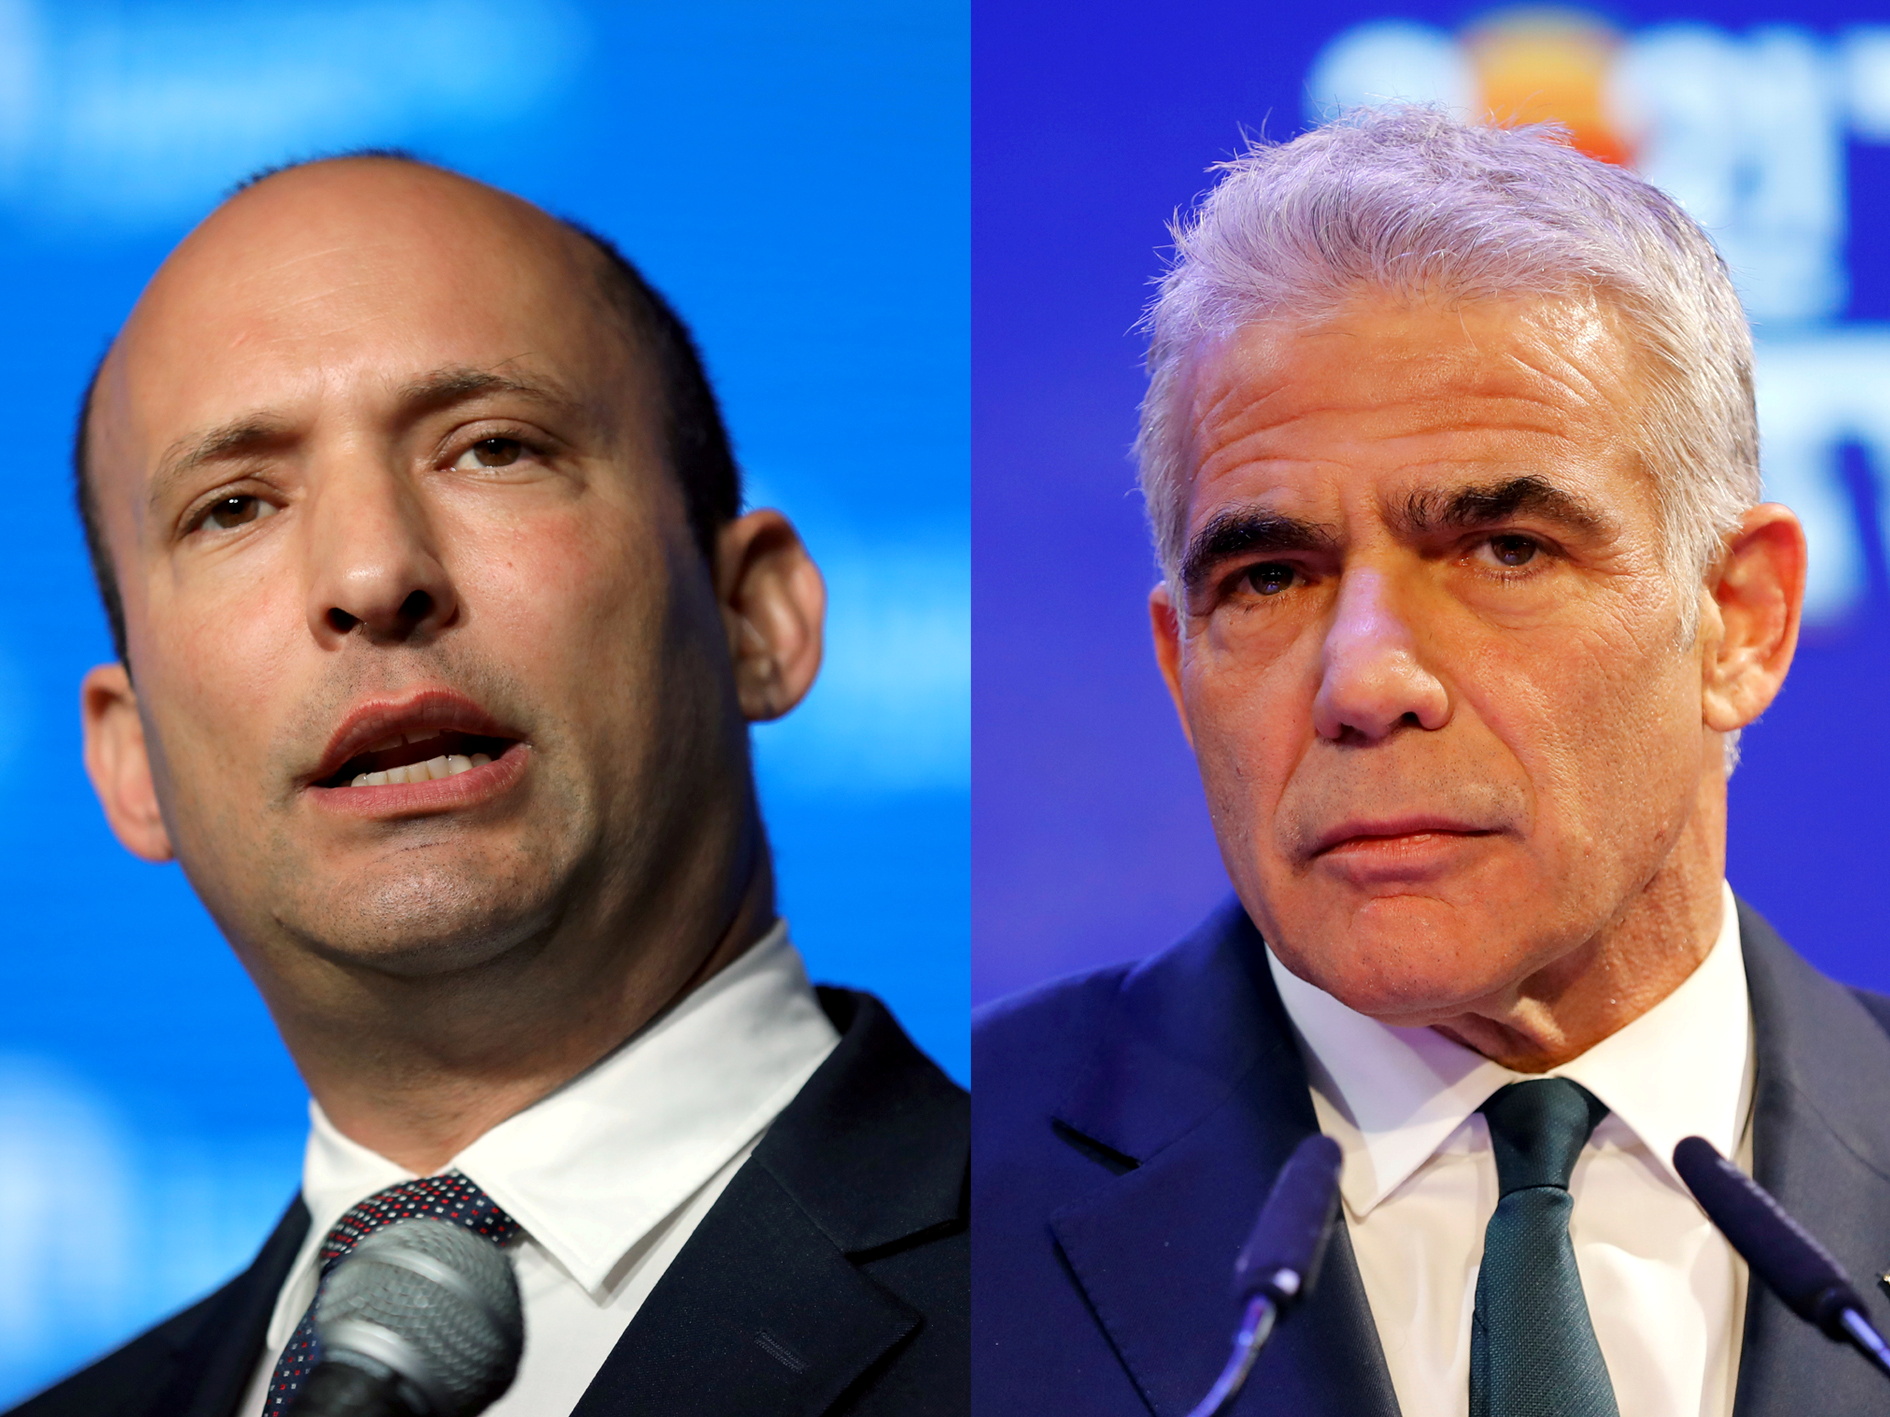 El nacionalista ex ministro de Education Naftali Bennett y elcentrista Yair Lapid. Ambos se sucederán en el puesto de Primer Ministro. REUTERS/Ammar Awad/Amir Cohen